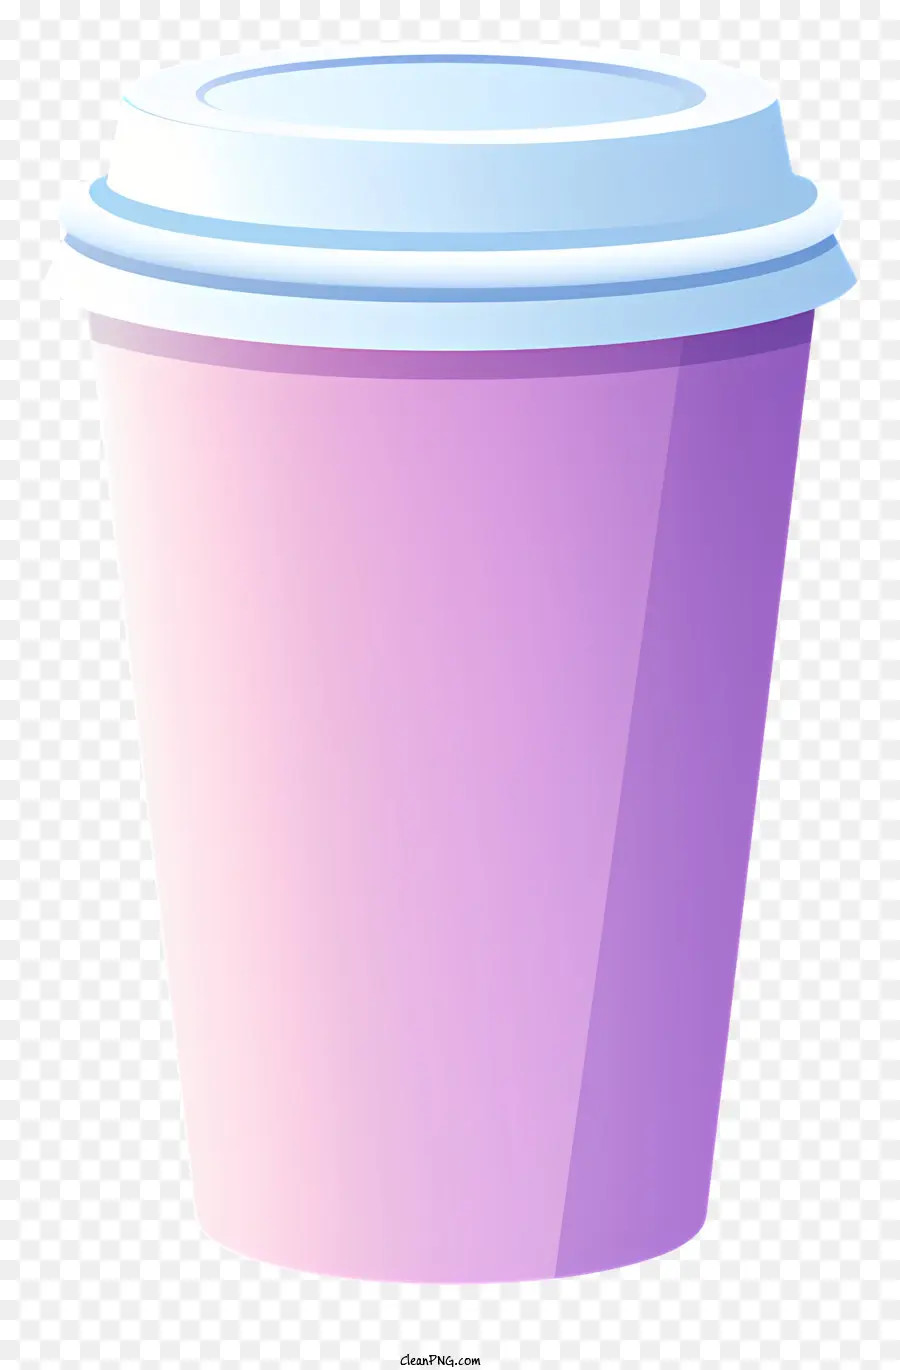 cốc nhựa màu hồng nắp trắng cốc rỗng nền đen - Cốc nhựa đơn giản với nắp màu hồng và cốc trắng bên trong